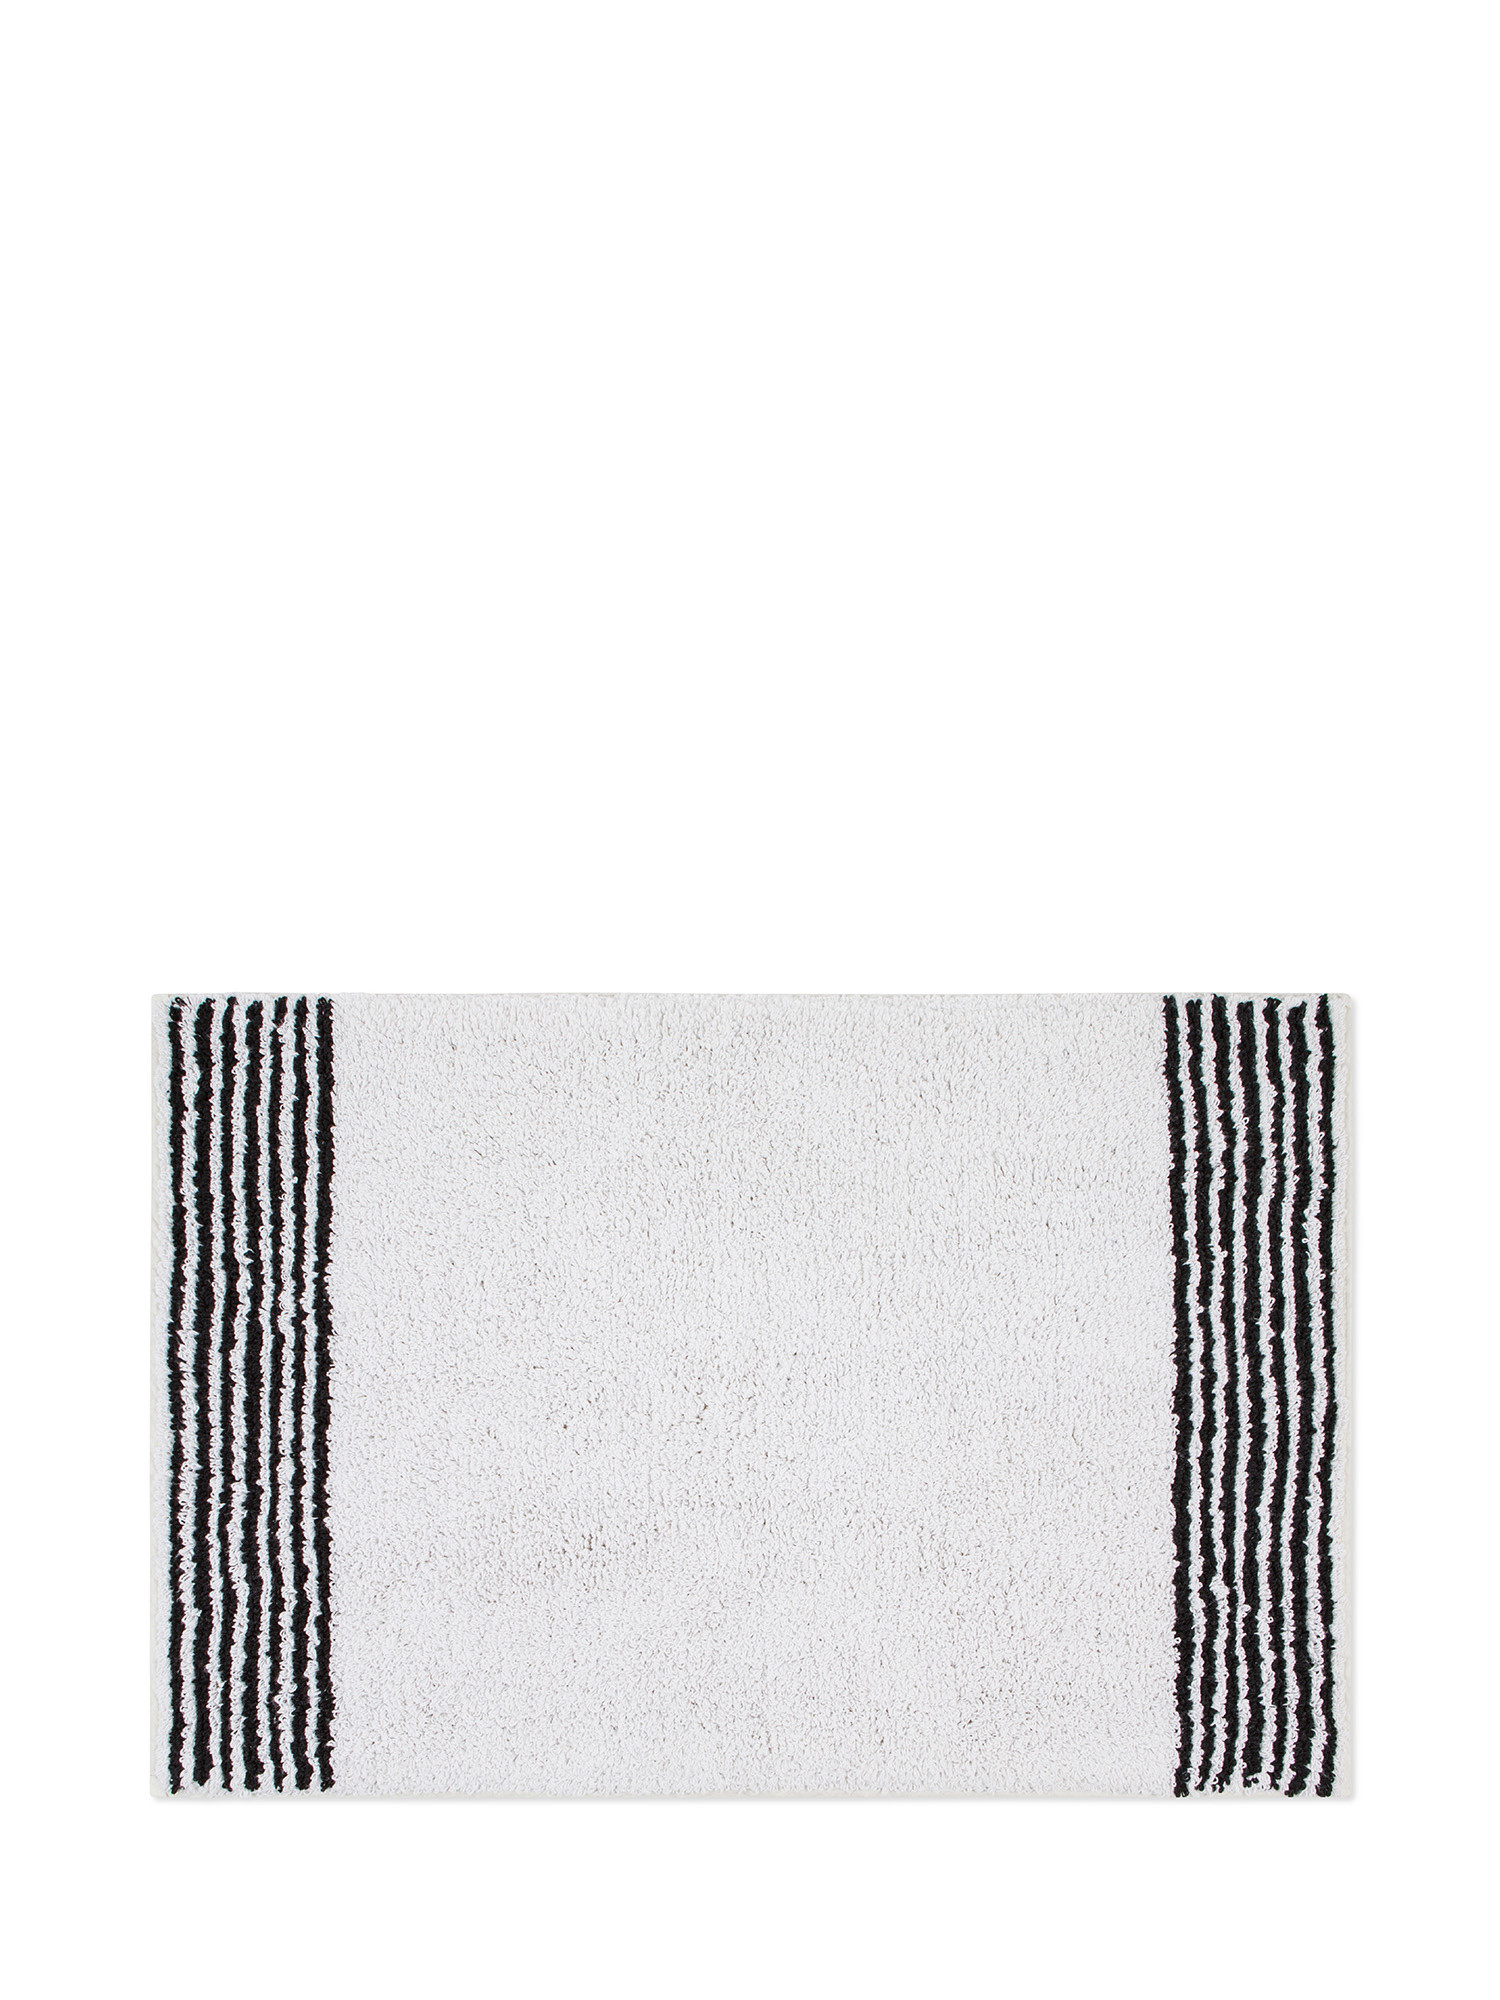 Tappeto bagno spugna di cotone con righe a contrasto, Nero, large image number 0